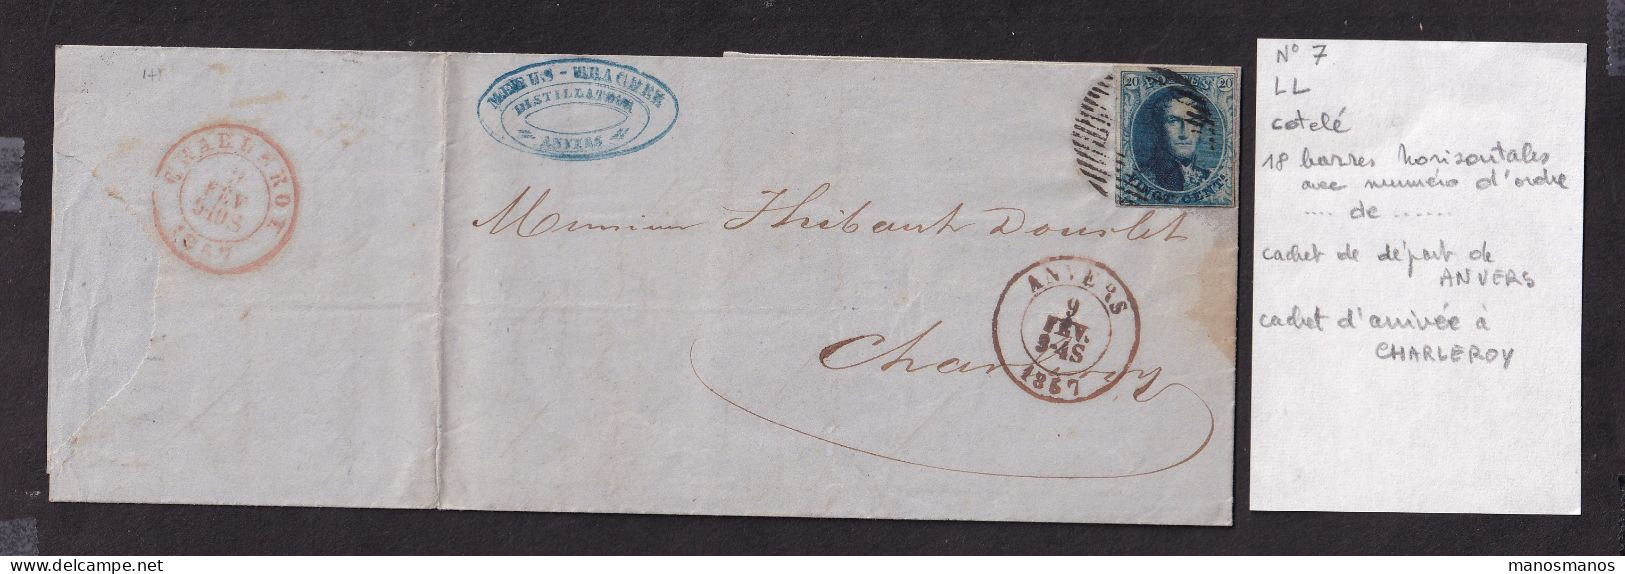 DDFF 870 -- Belgium - Lettre TP Médaillon ANVERS 1857 Vers Charleroy - Cachet Et Entete Distillateur Meeus-Trachez - Vins & Alcools